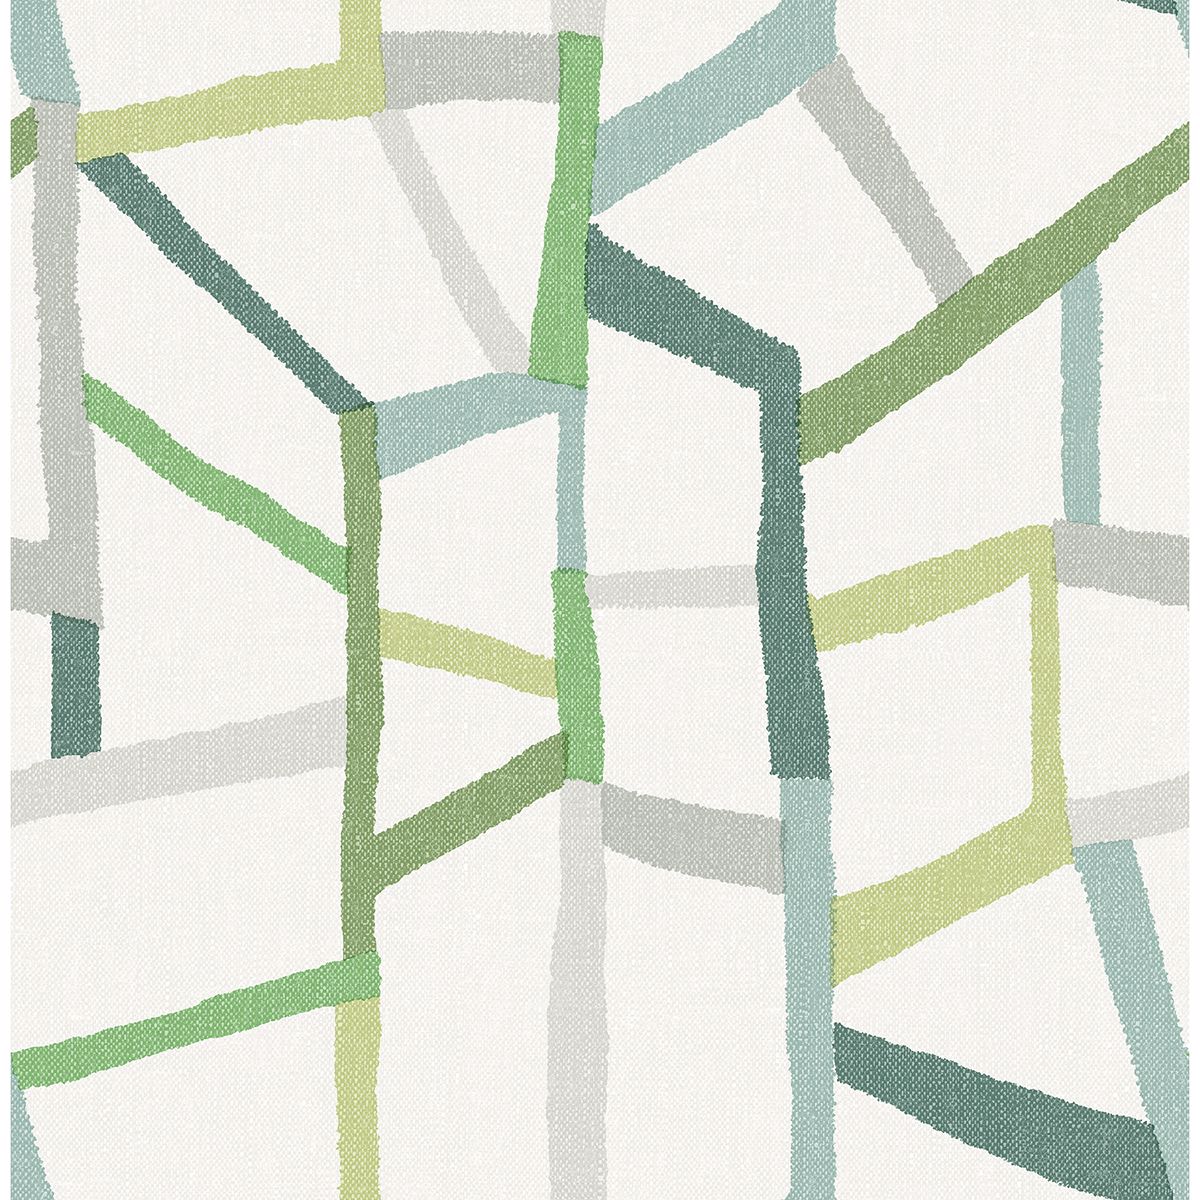 2903-25847 - Tate Green Geometric Linen Wallpaper - by A-Street Prints